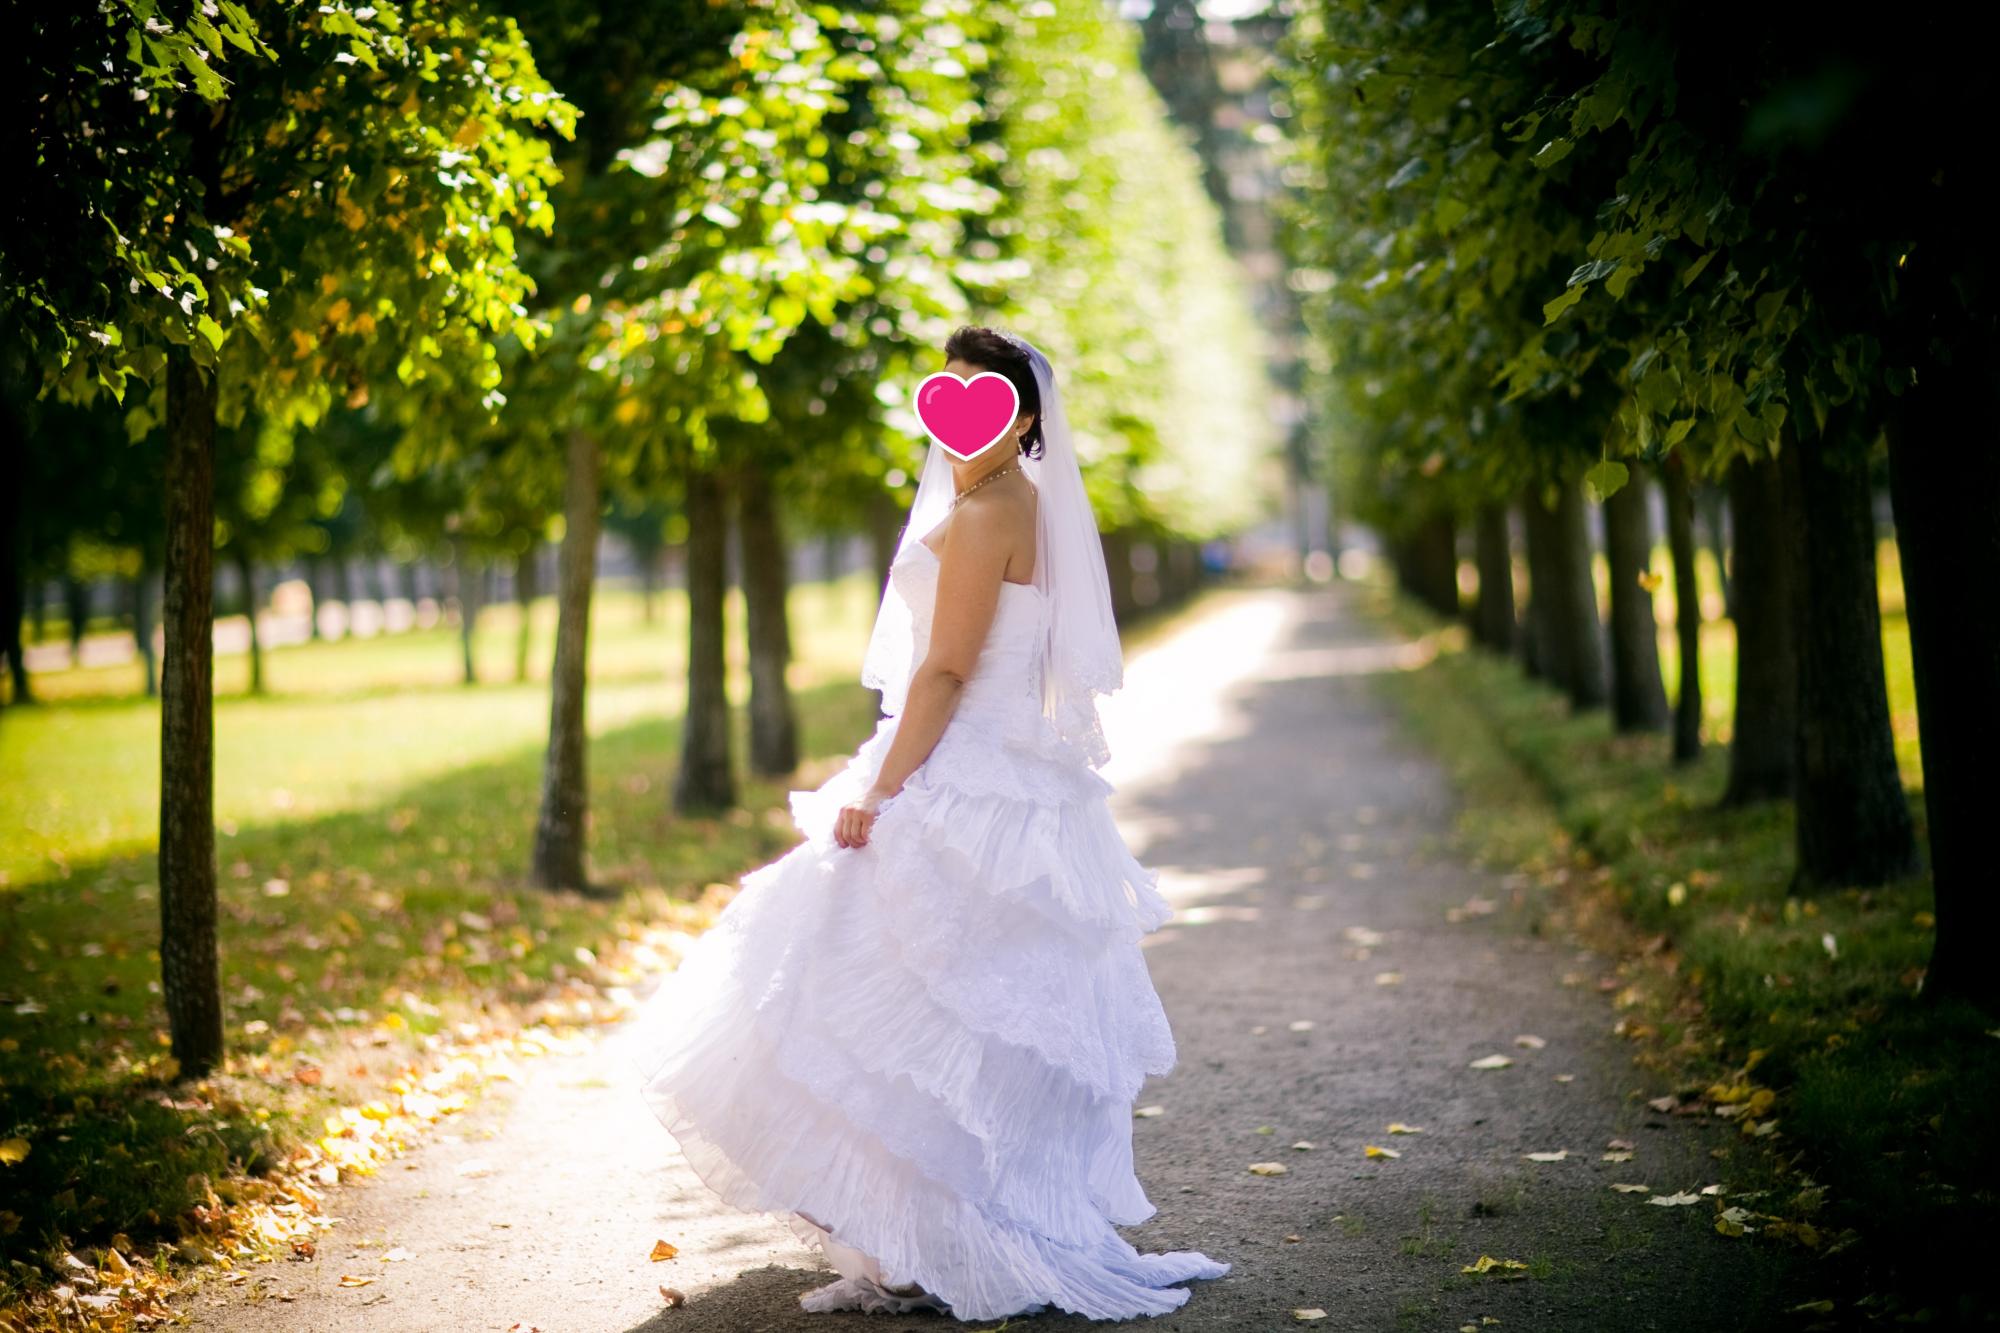 Свадебное платье в чехле